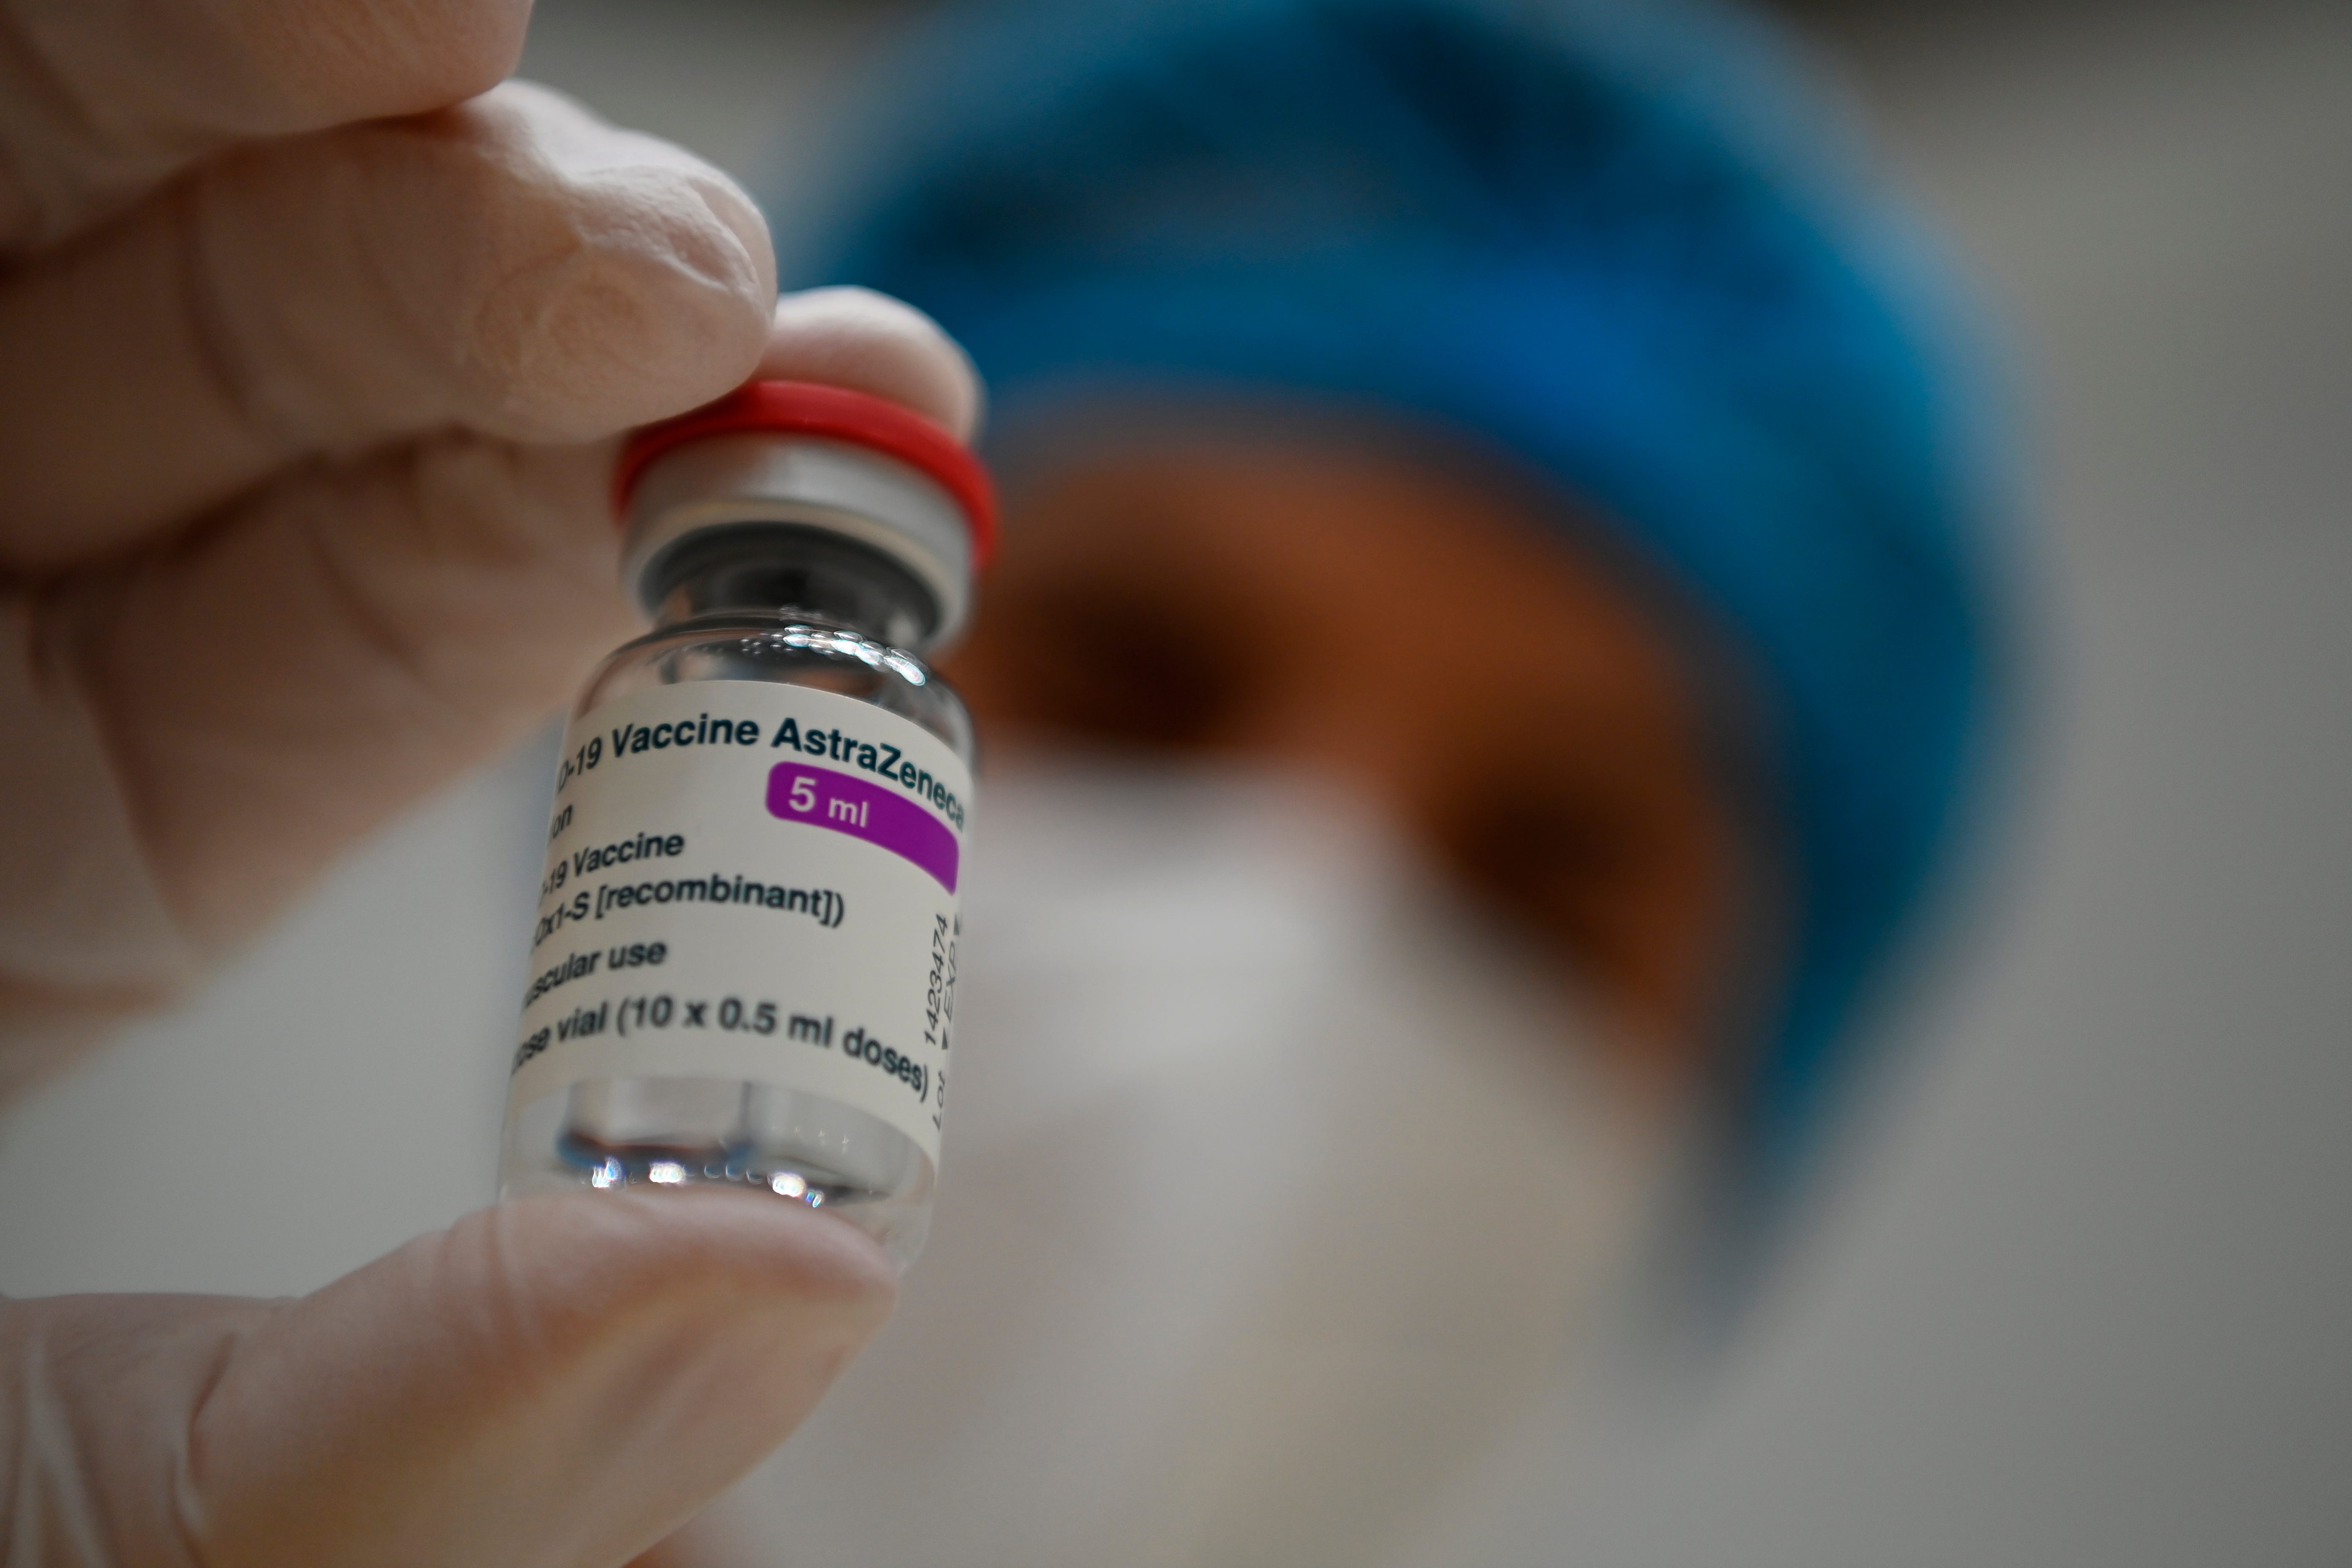 spreading vaccine misinformation undermine efforts immunize